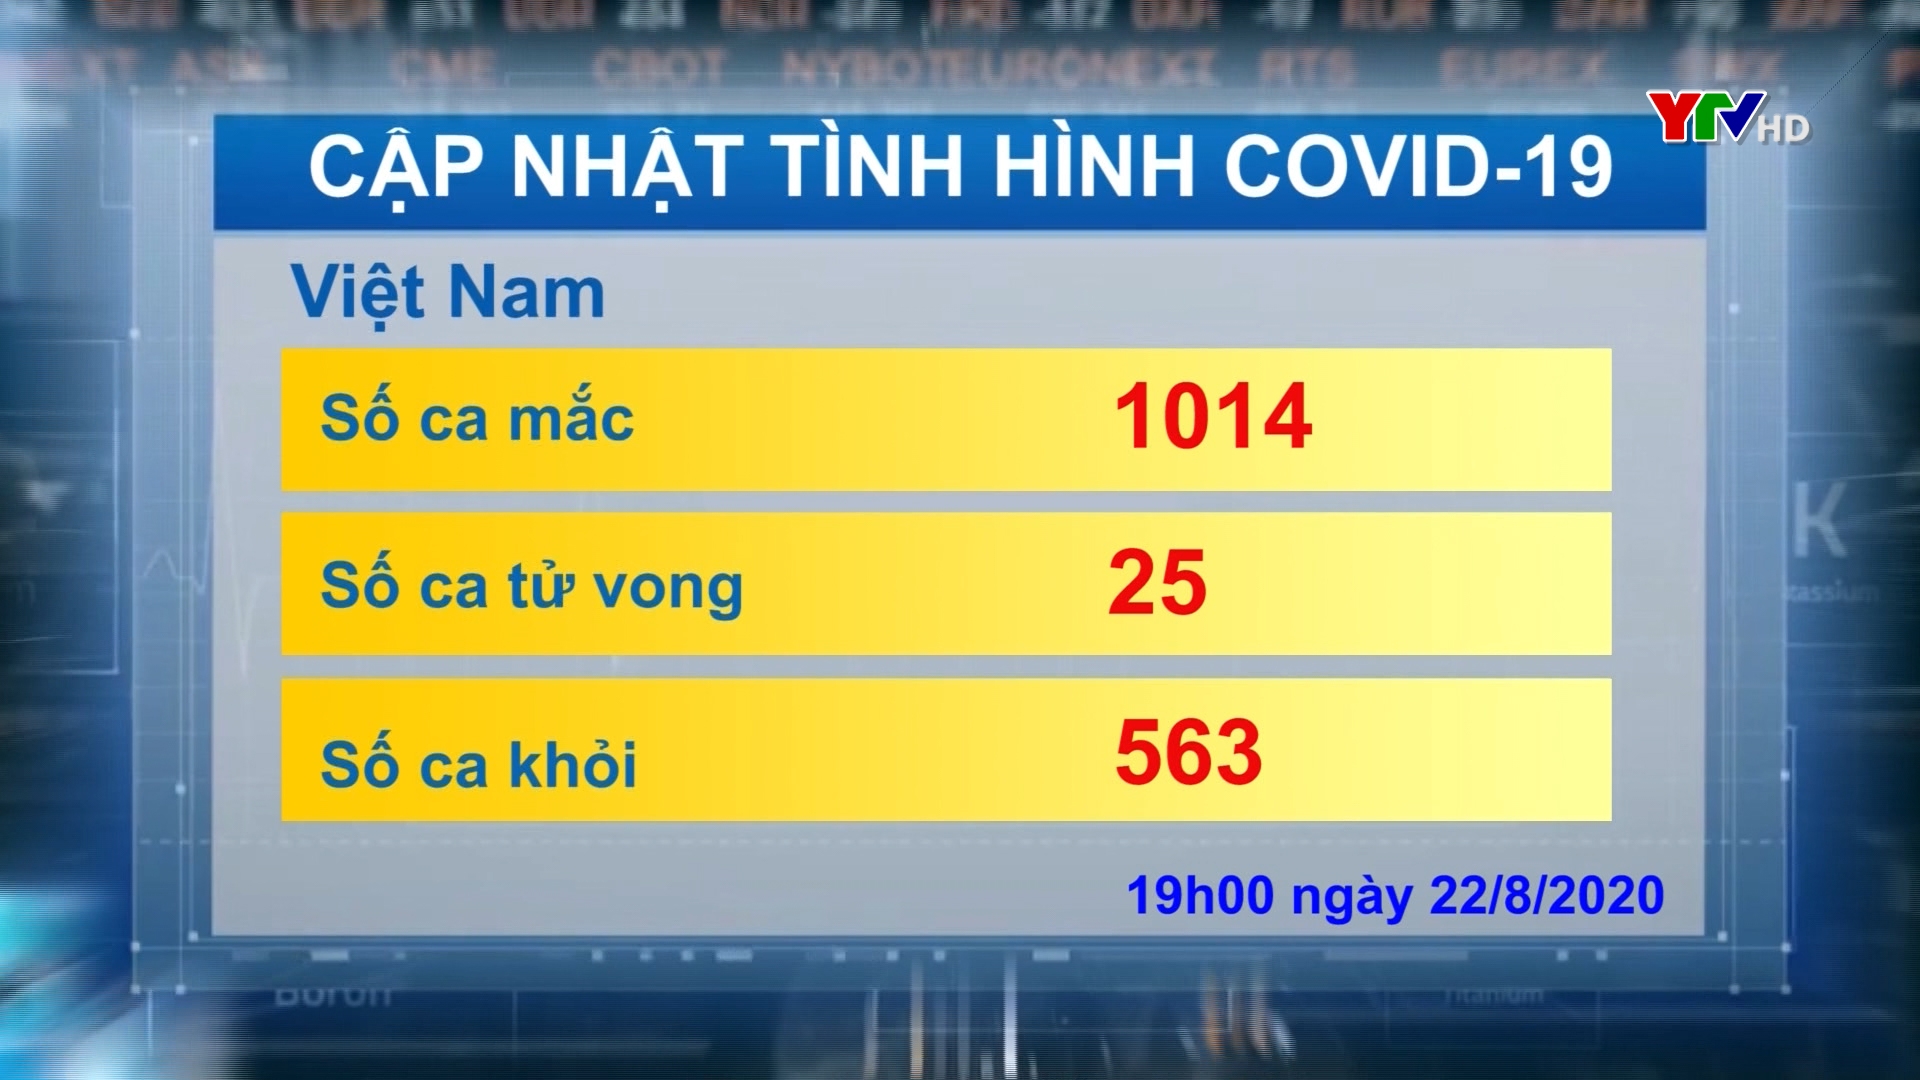 Việt Nam ghi nhận thêm 5 ca nhiễm COVID - 19